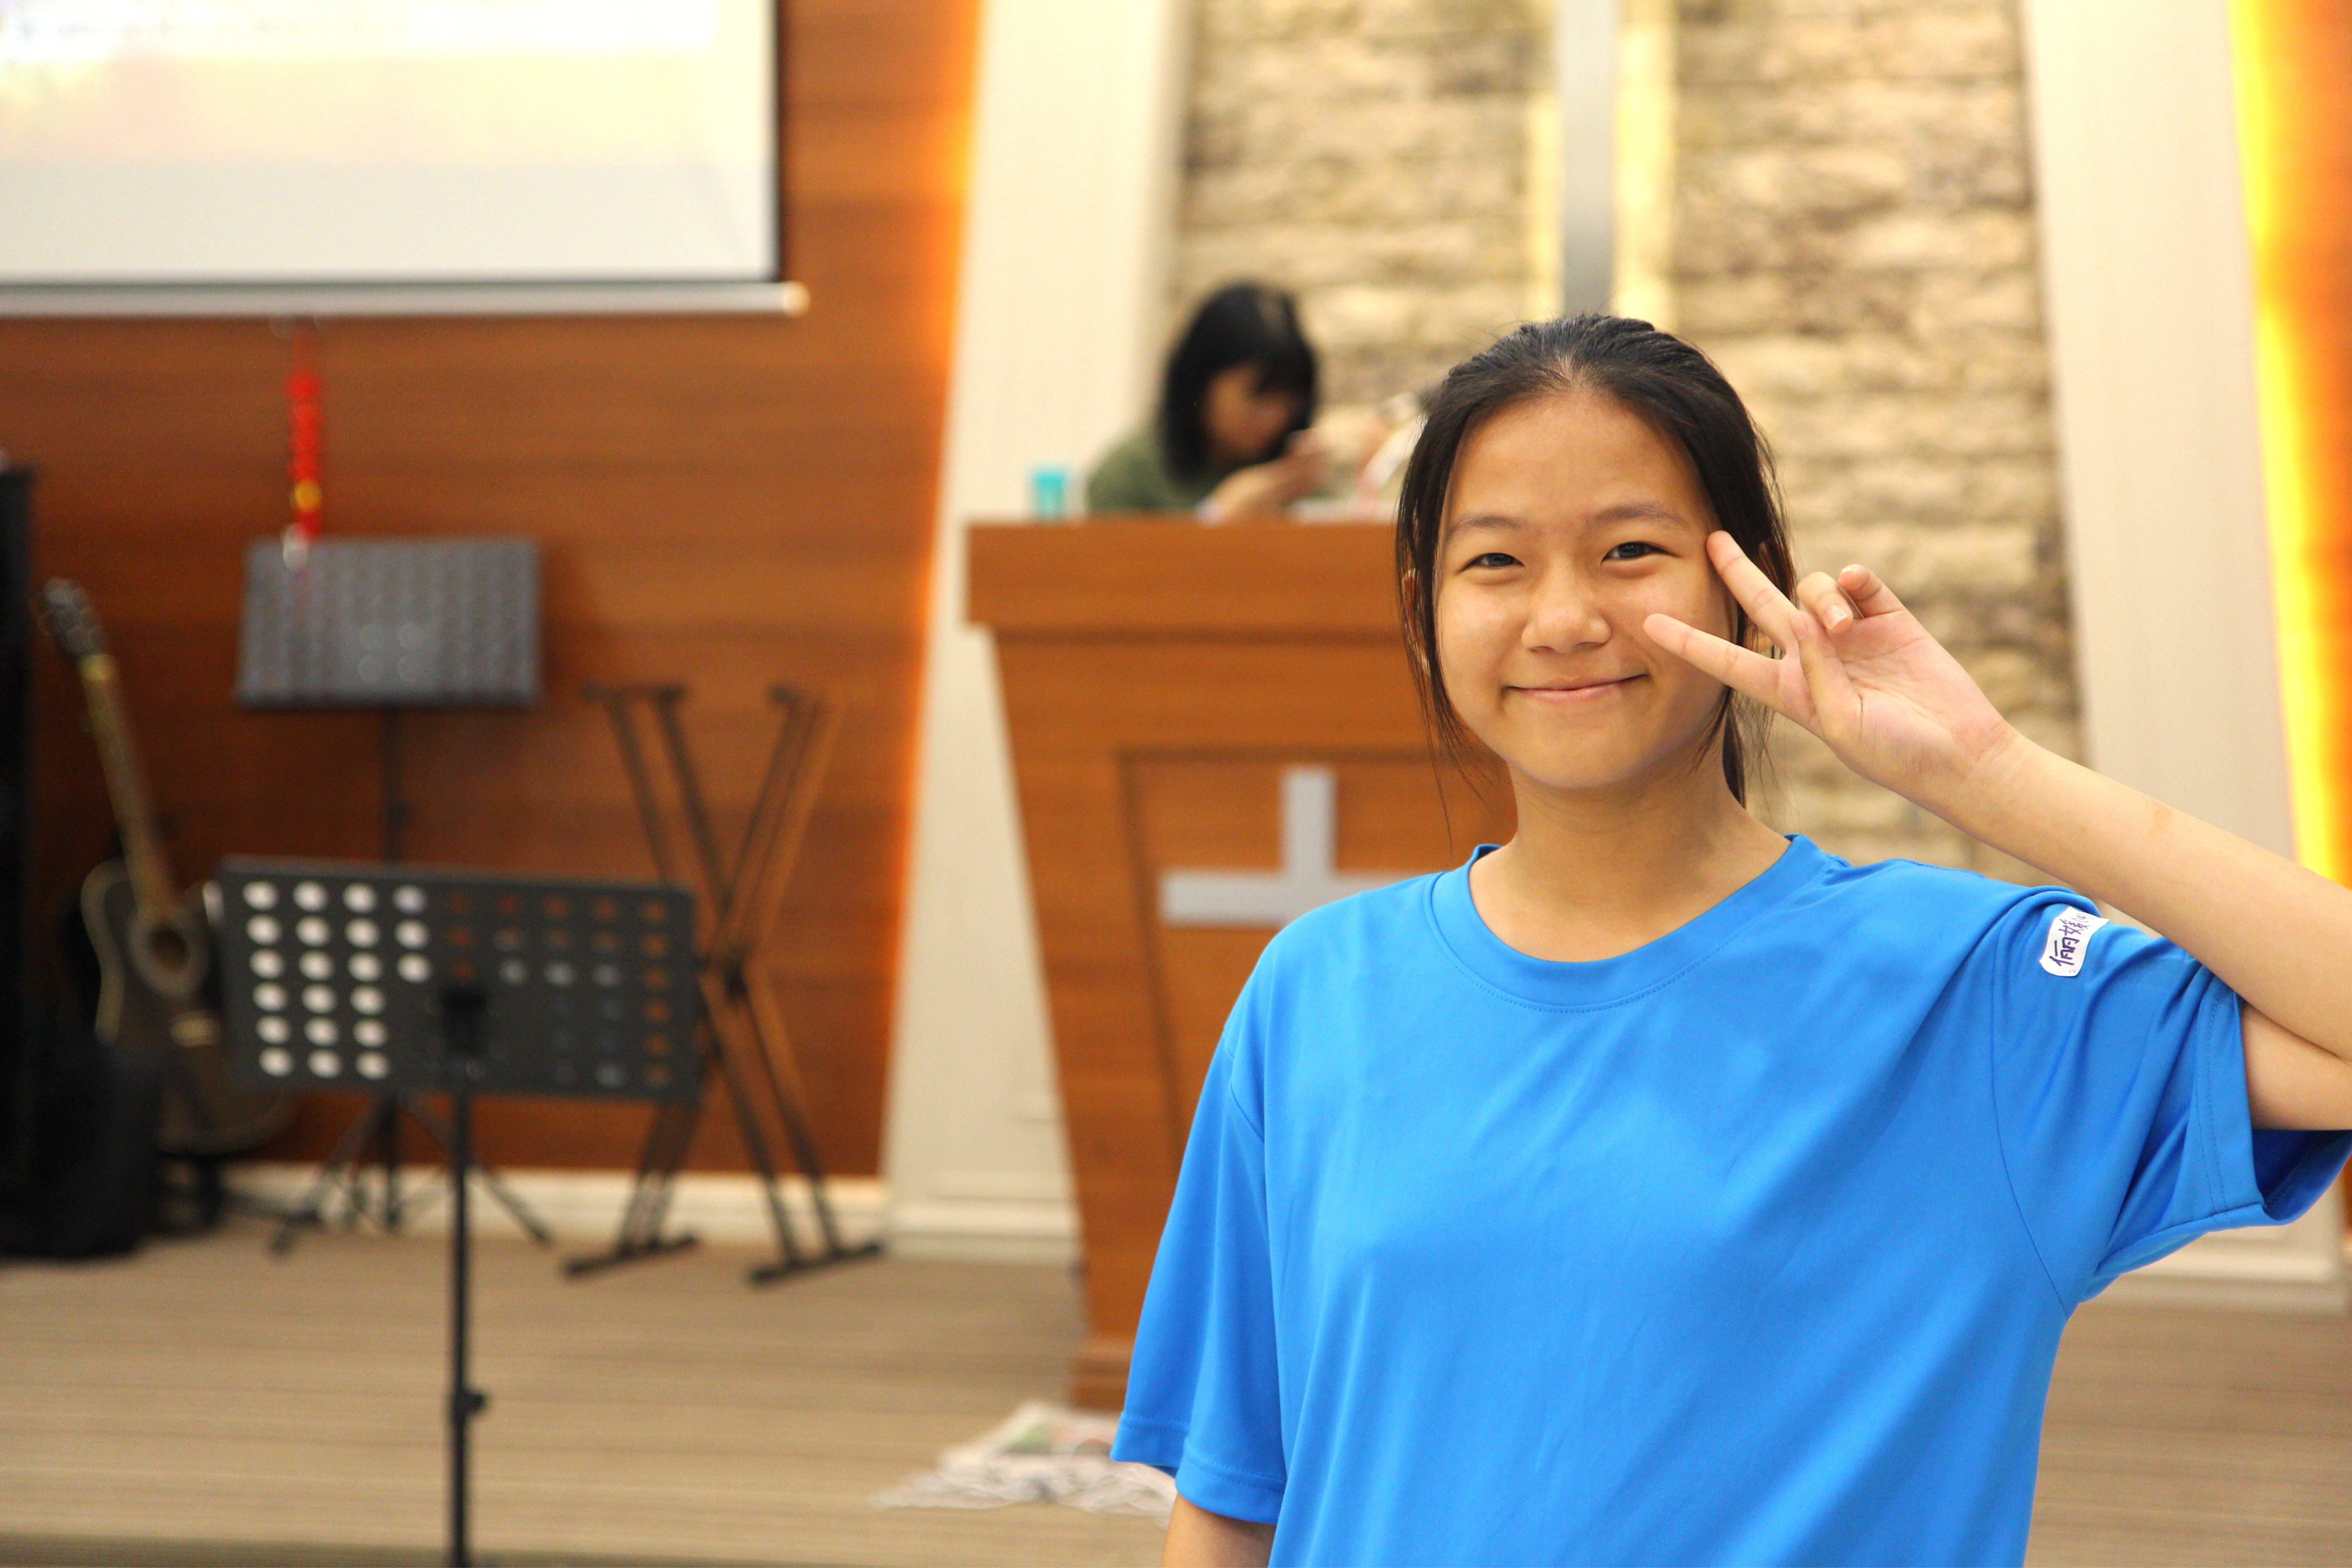 马来西亚 柔佛 峇株巴辖 苏雅喜乐堂 和平团契 少年 一日营会 3月 23日 2018年 门训生 Malaysia Johor Batu Pahat Gereja Joy Soga Peace Fellowship Youth One Day Camp 23 Mar 2018 B39